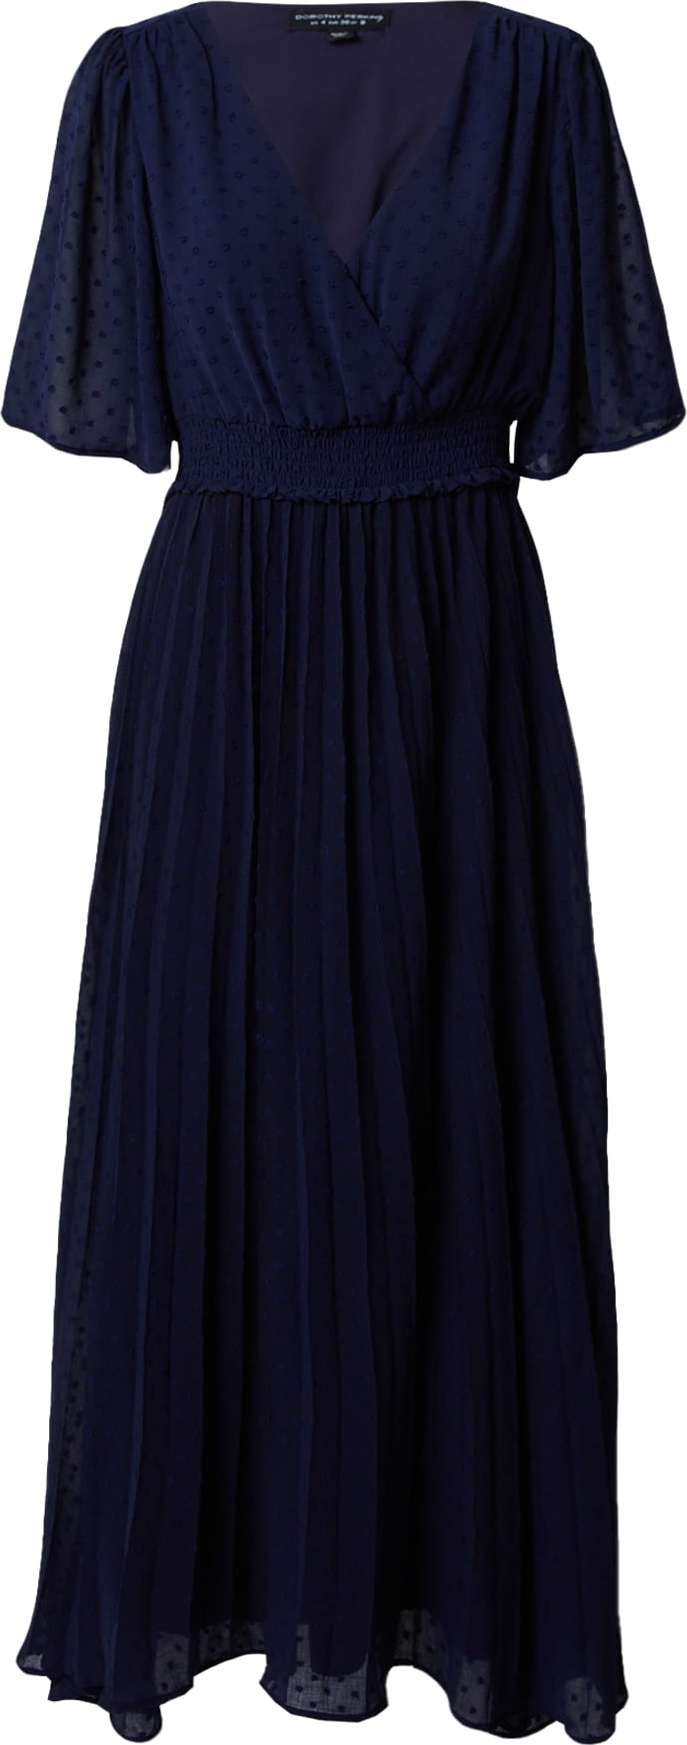 Šaty Dorothy Perkins námořnická modř